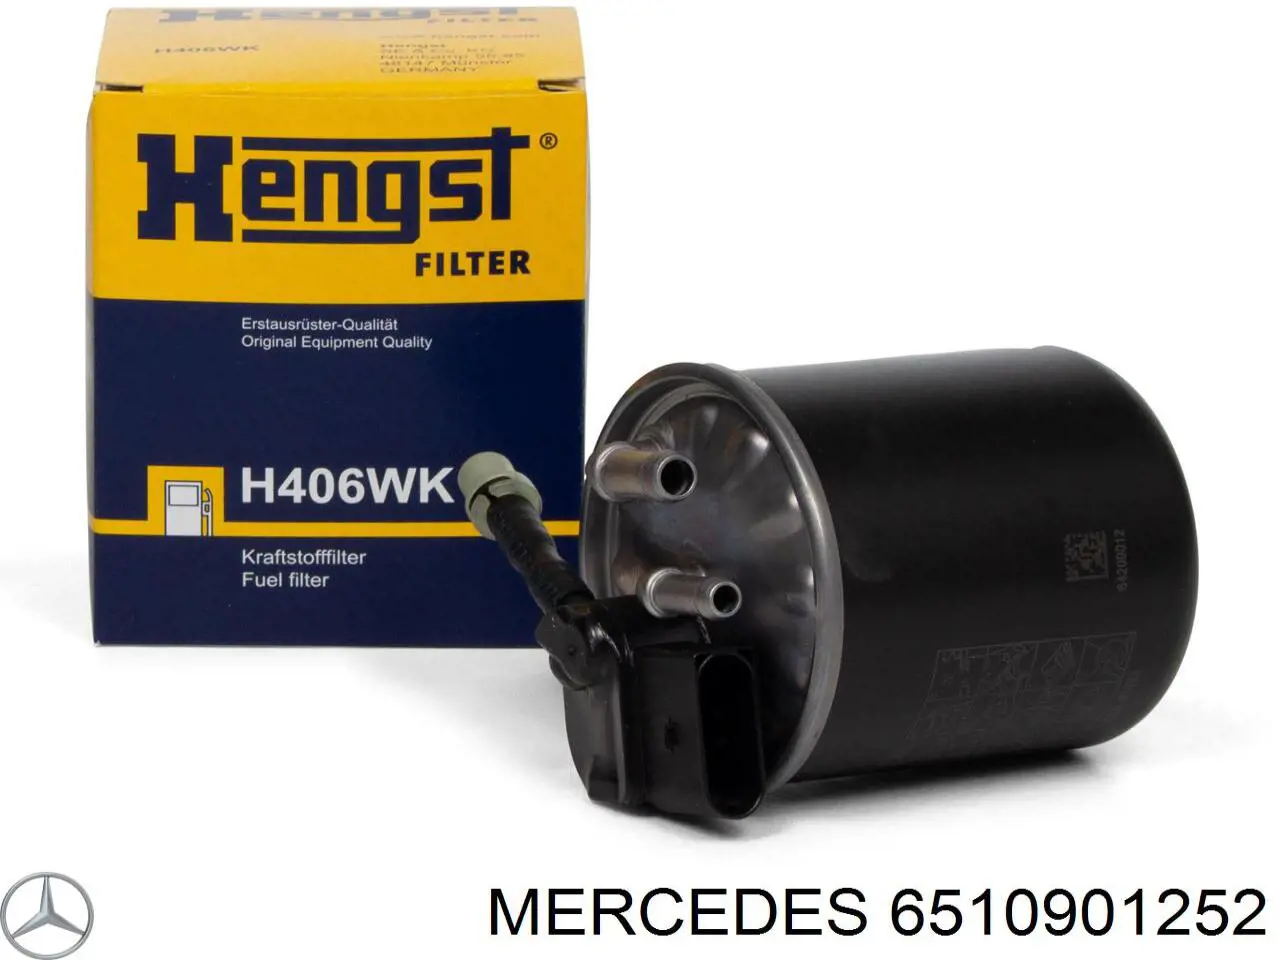 6510901252 Mercedes filtro de combustible